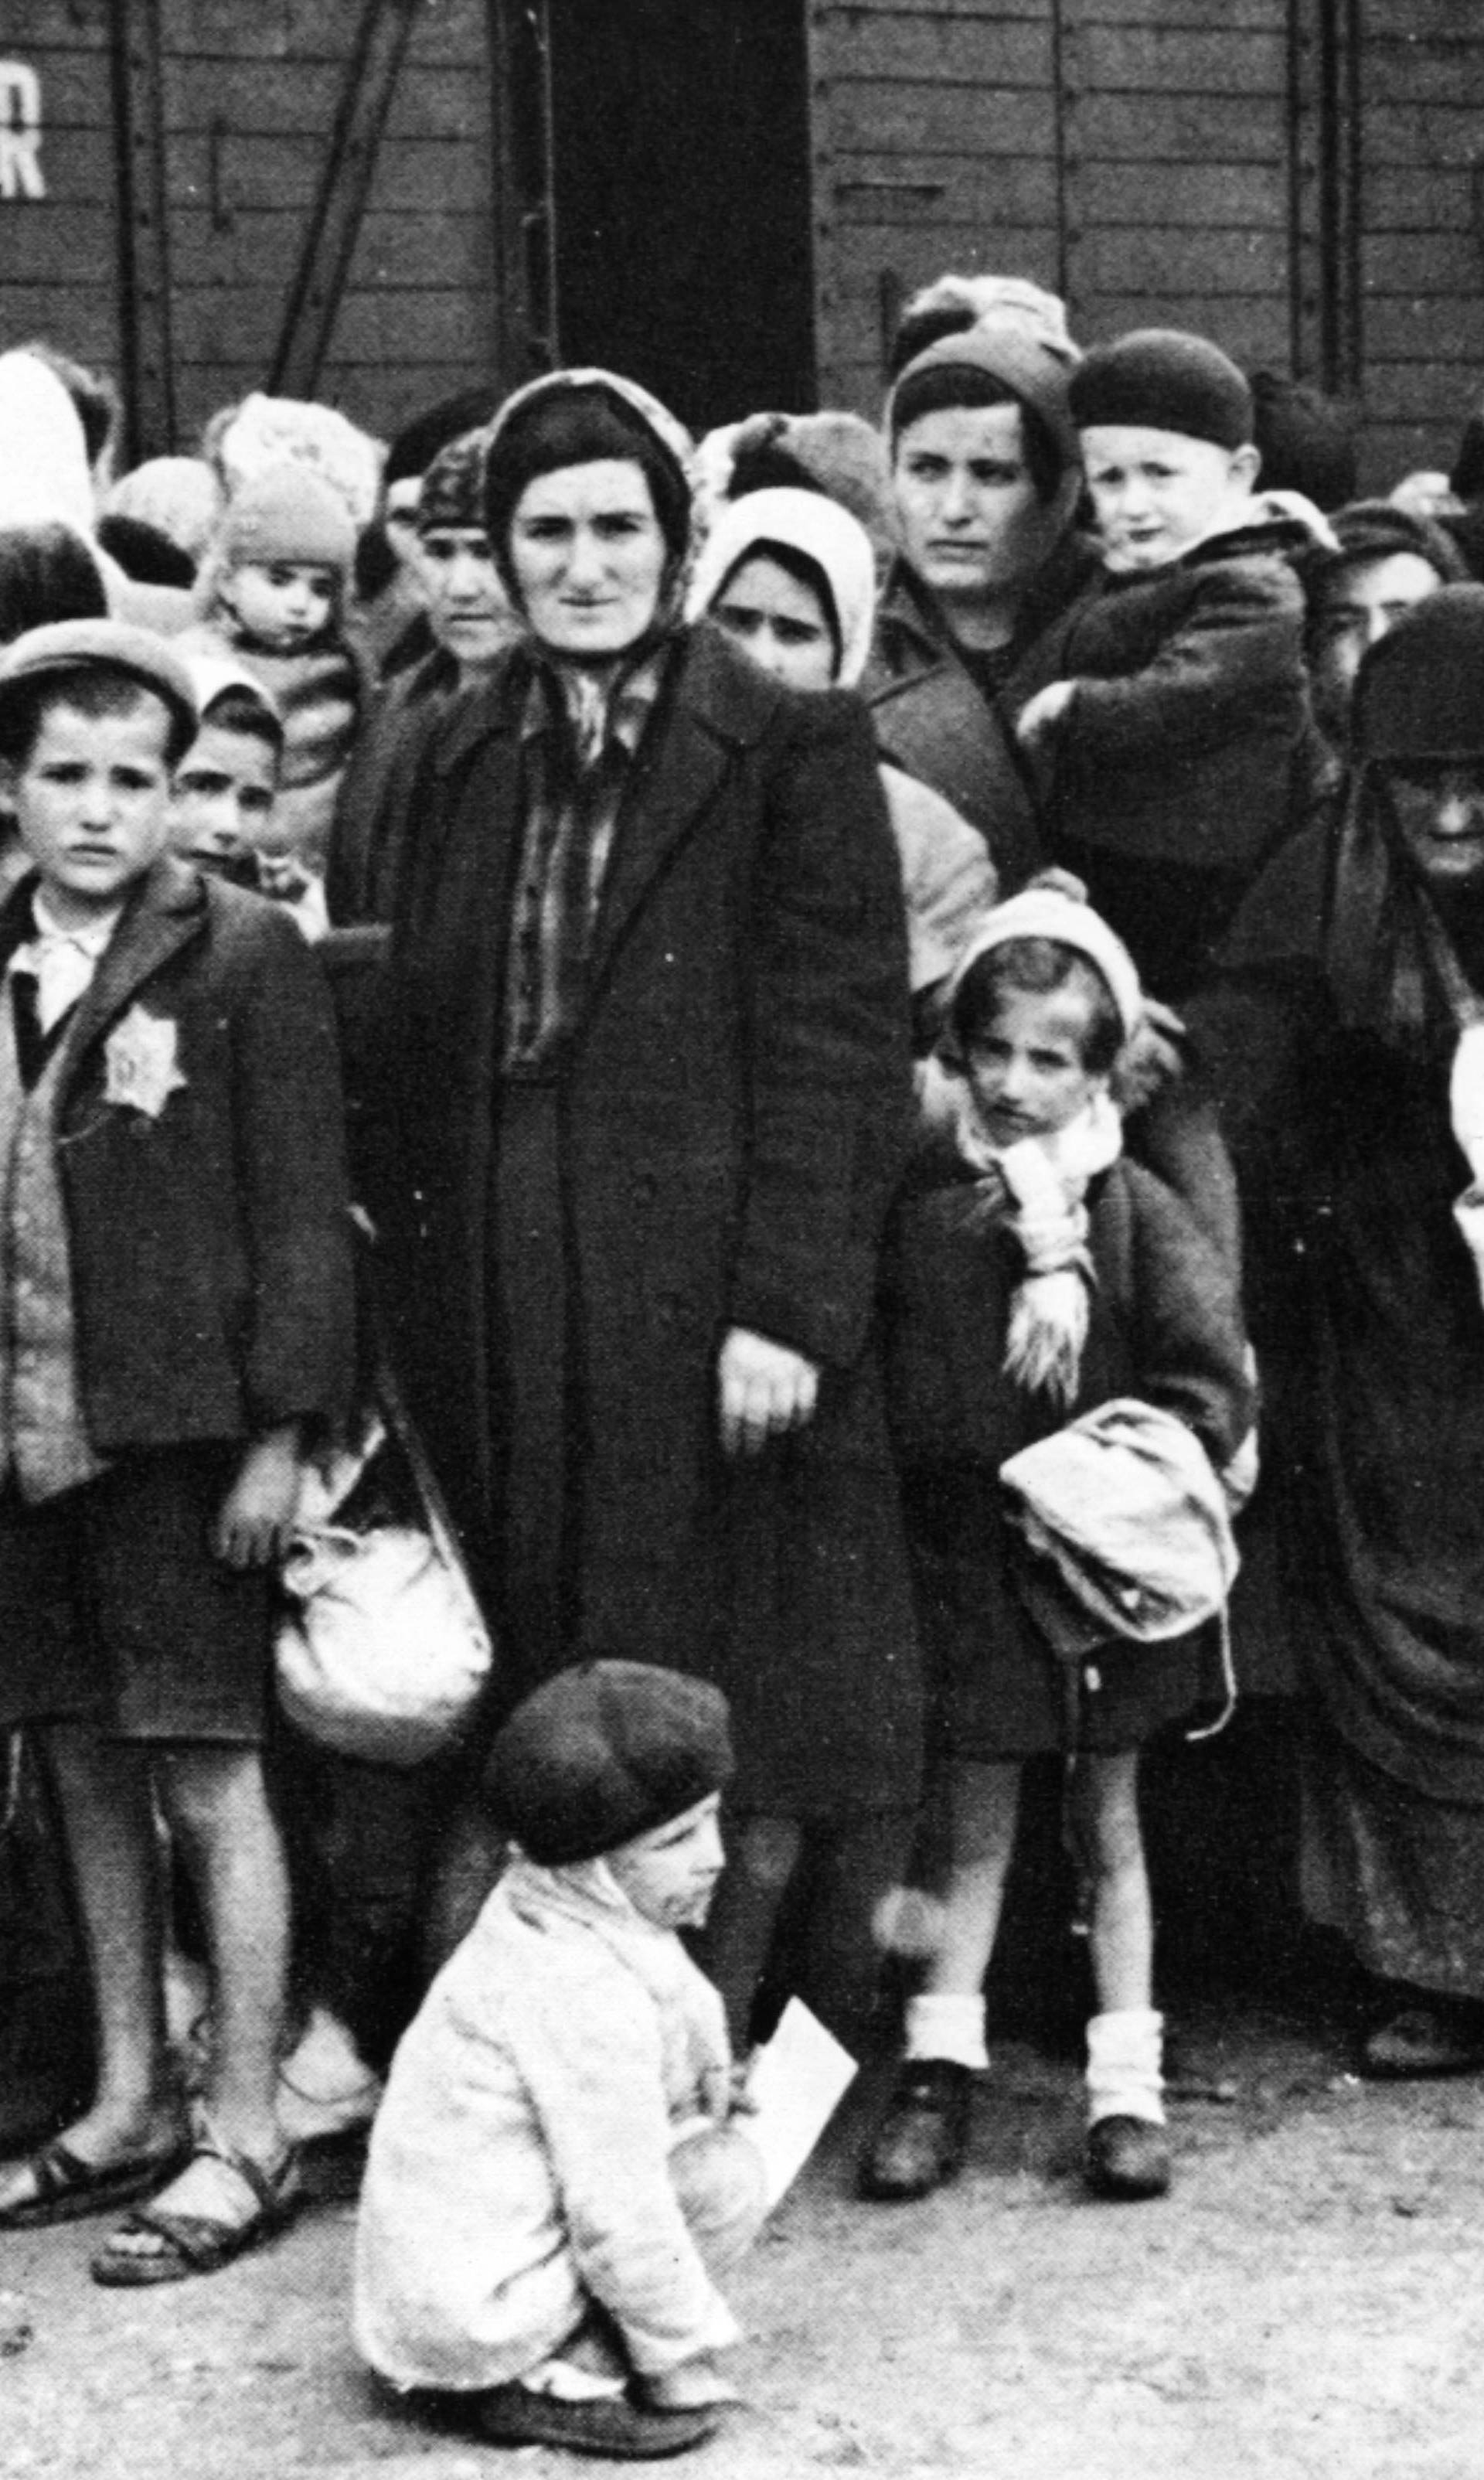 Ungarische Juden auf Rampe / Auschwitz1944